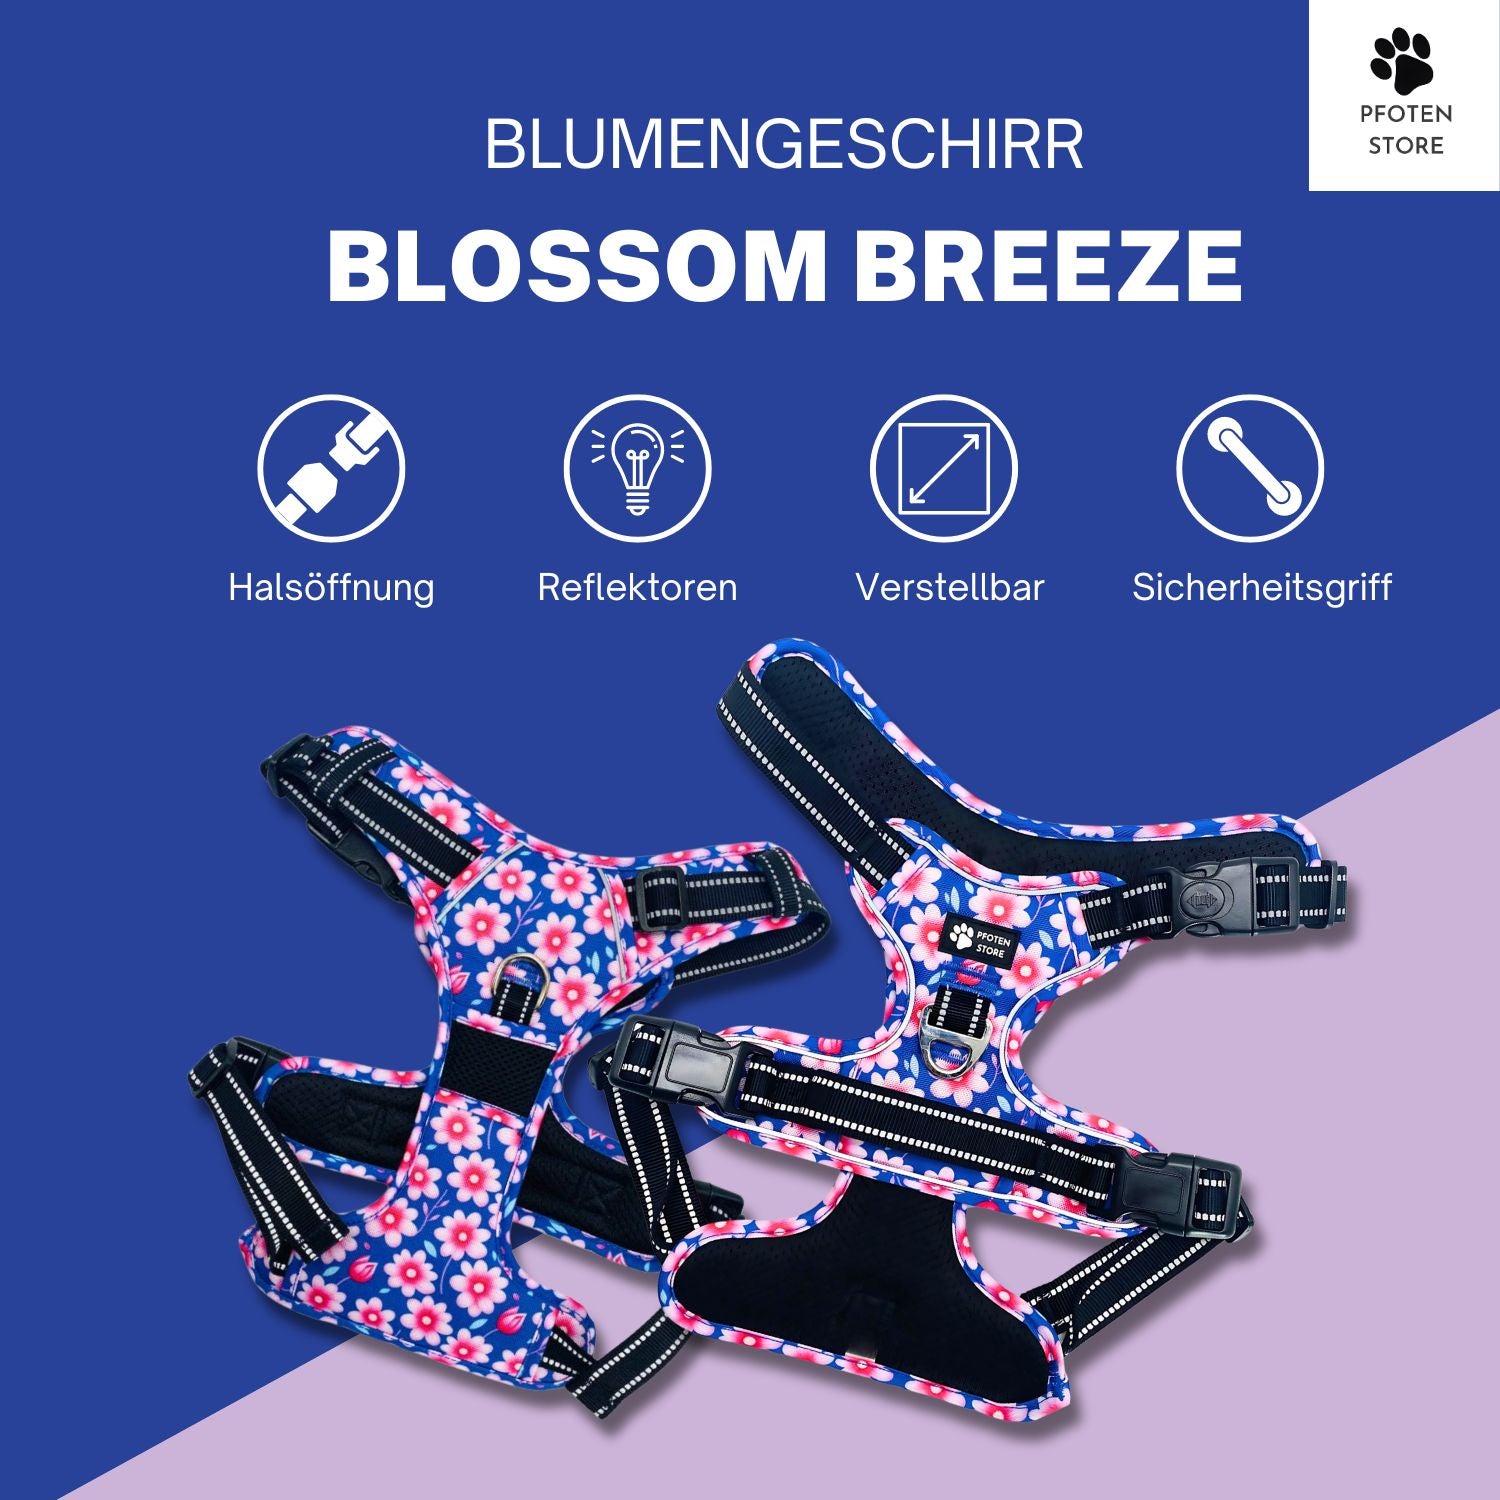 Pfoten Store - Blossom Breeze Blumengeschirr